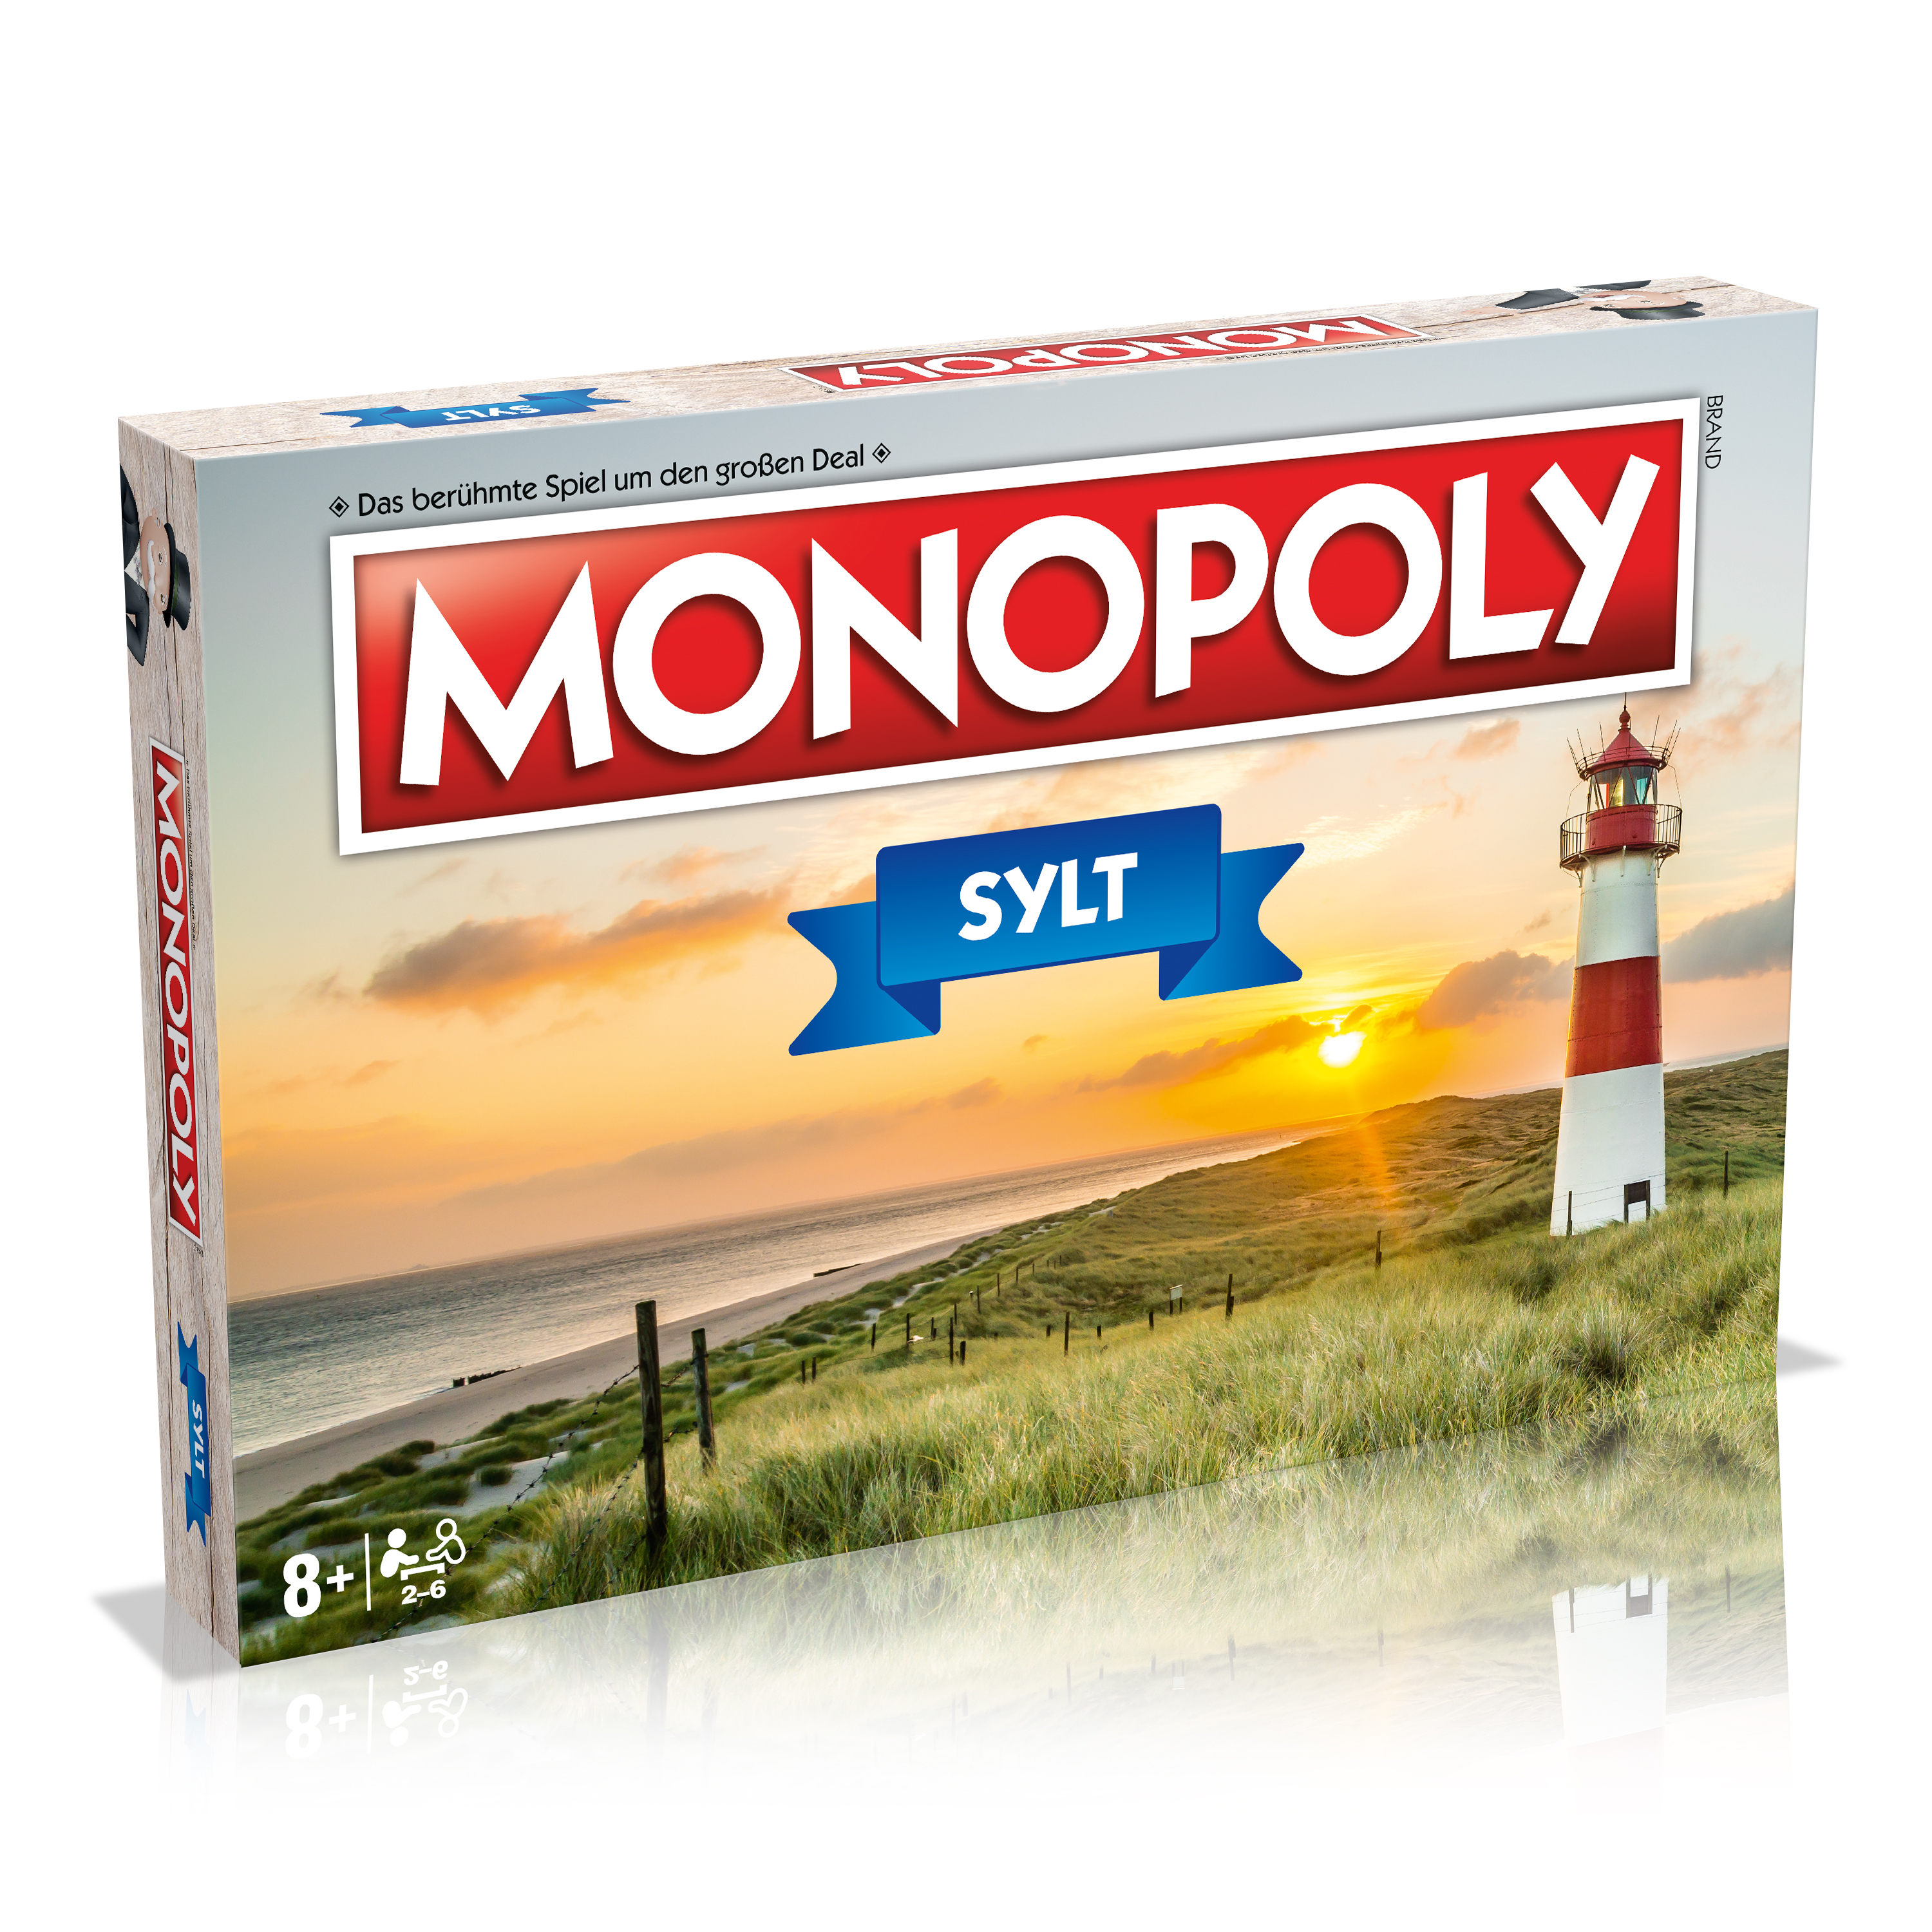 ! AUSVERKAUFT ! Monopoly - Sylt 